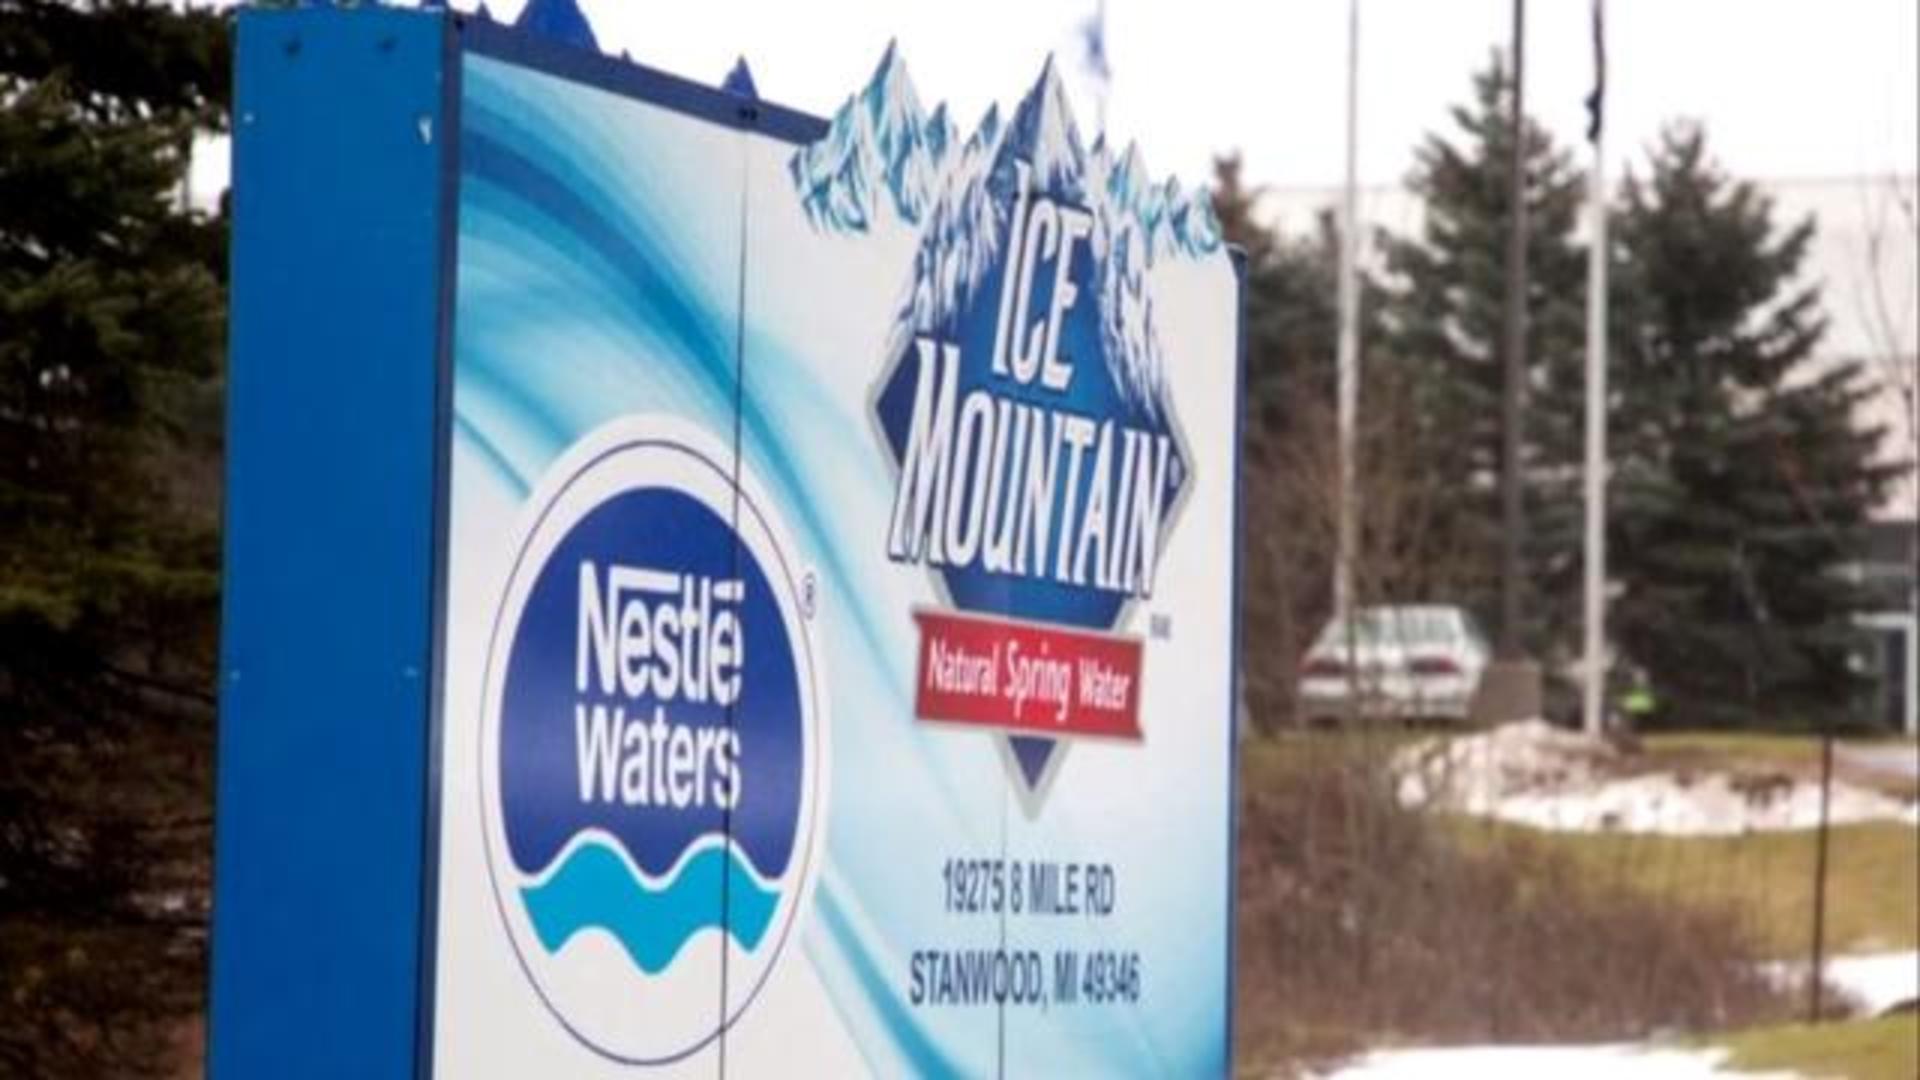 Michigan lawmakers under fire over Nestlé water bottling plan - CBS News